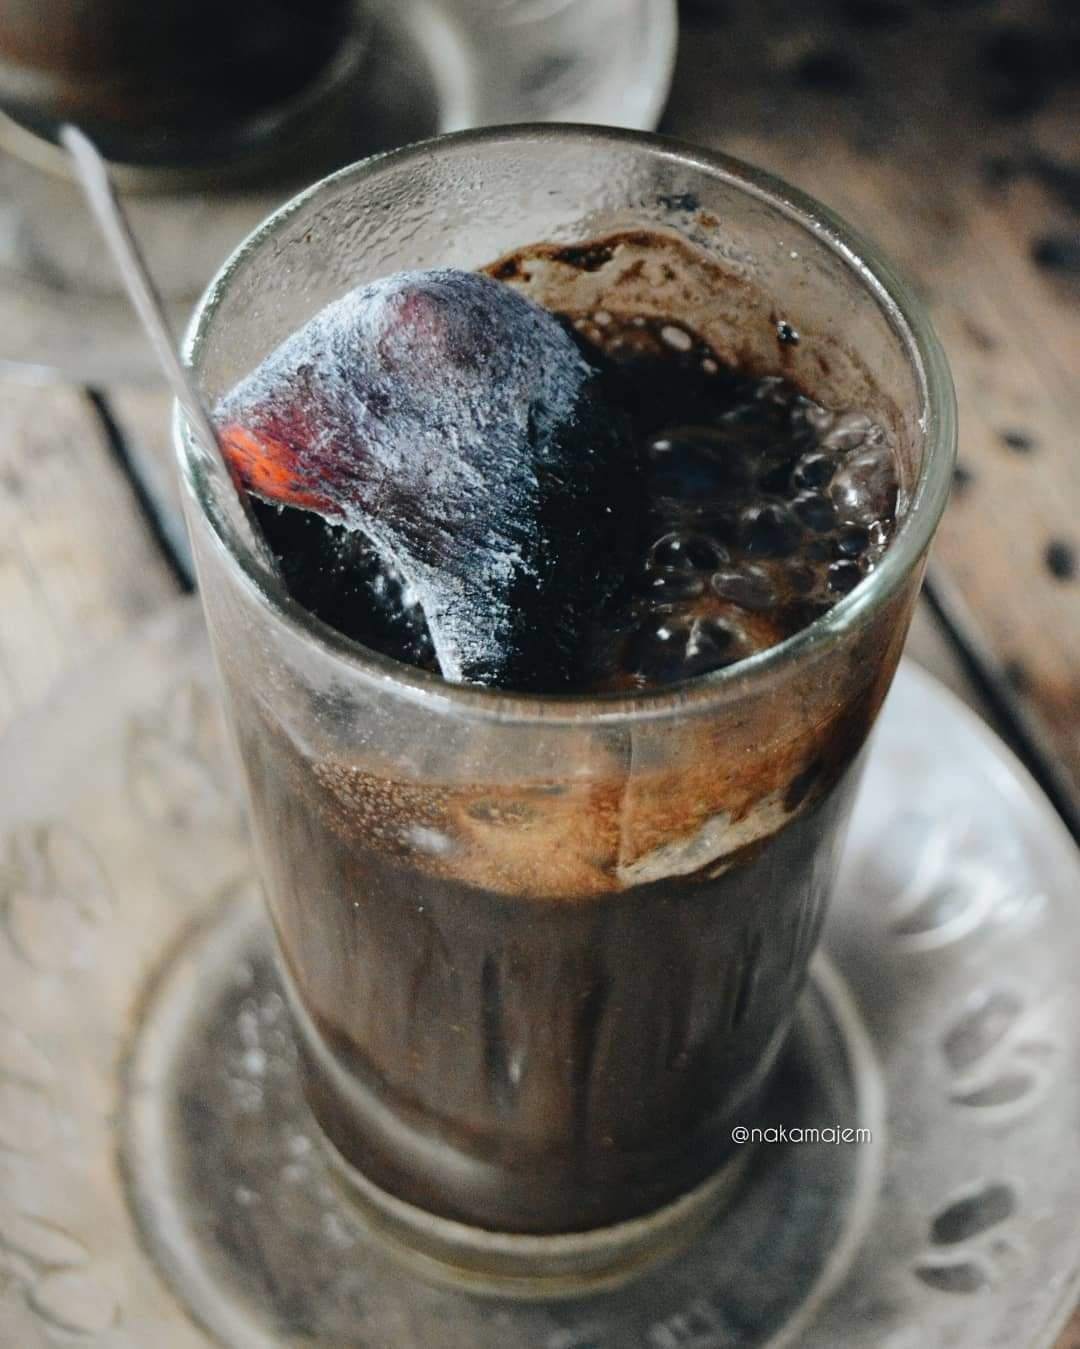 Bỏ than nóng vào cà phê, thức uống “hot trend” có hại cho sức khỏe nhưng vẫn hút khách - 5